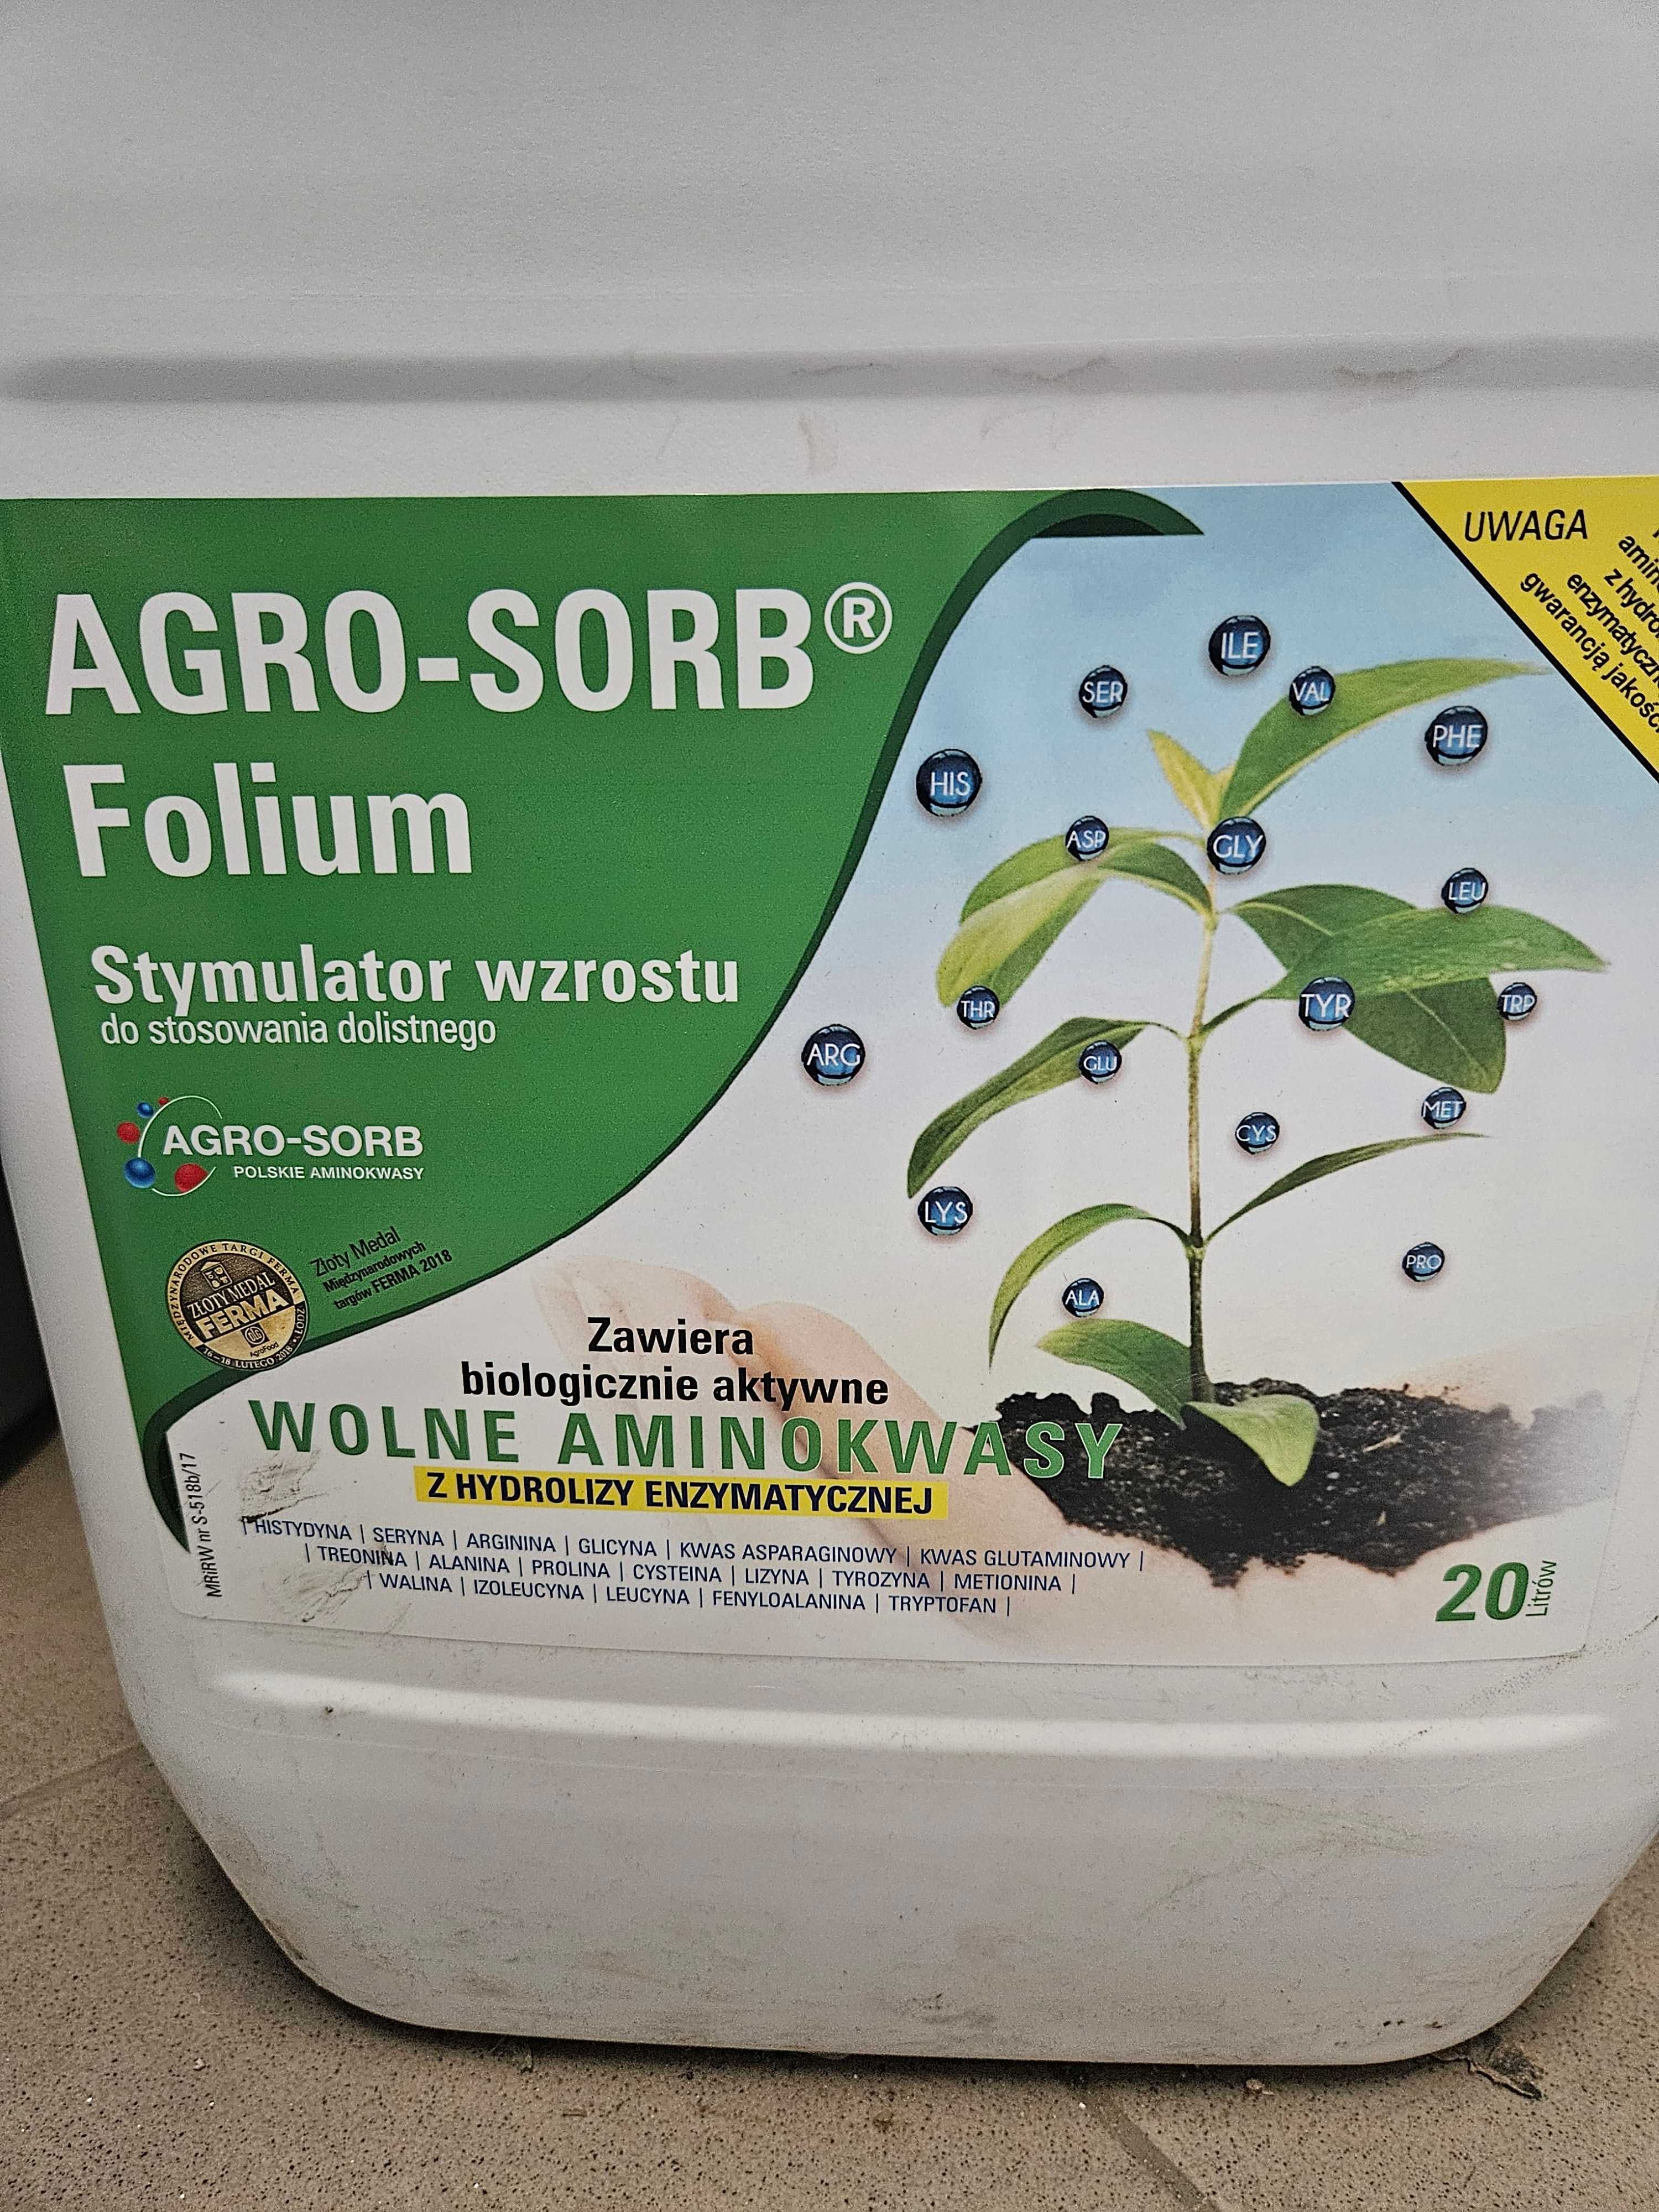 AGRO-SORB Folium 1L cena brutto